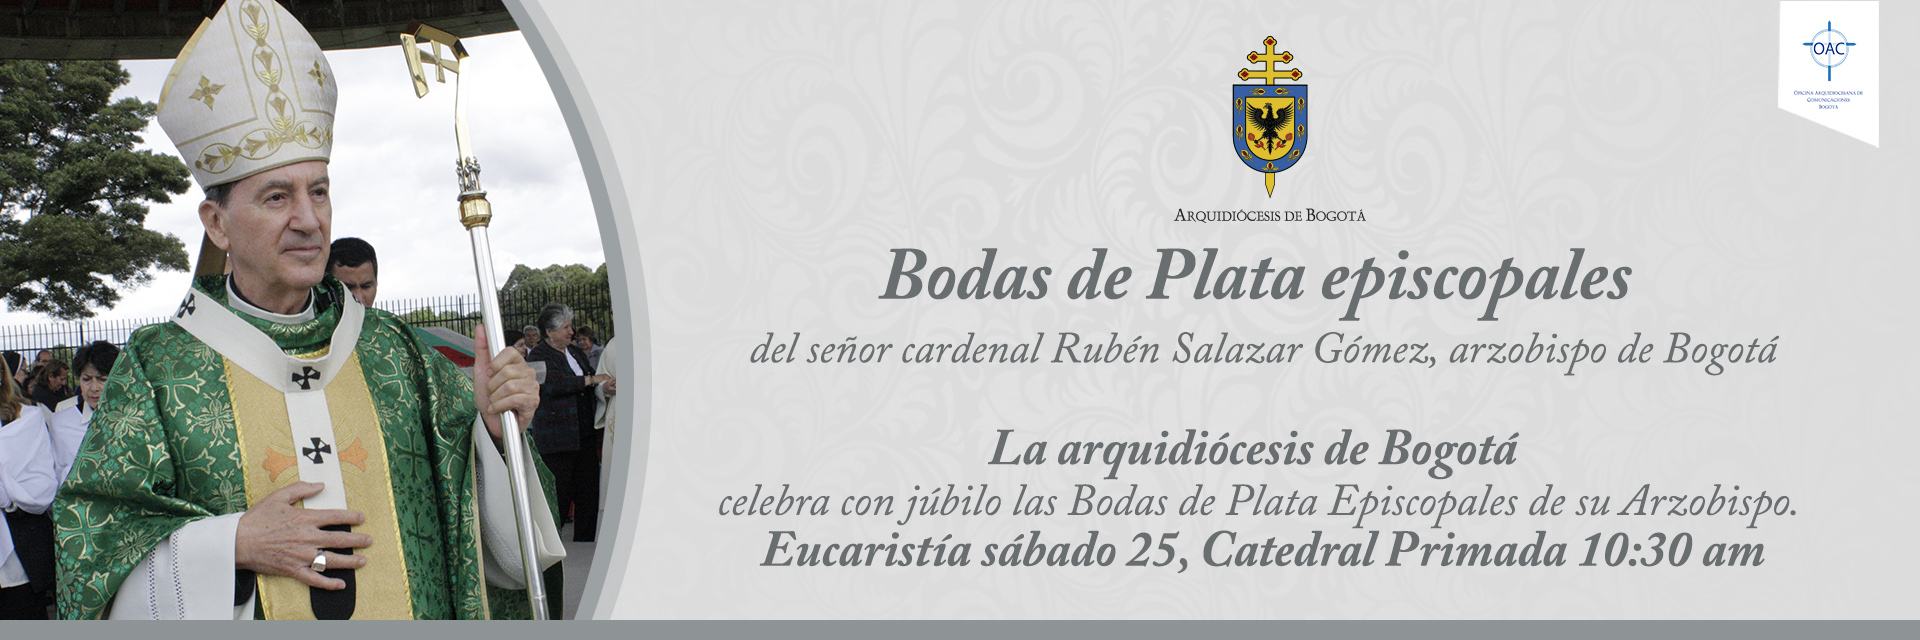 Bodas de Plata episcopales del señor cardenal Rubén Salazar Gómez, arzobispo de Bogotá, primado de Colombia